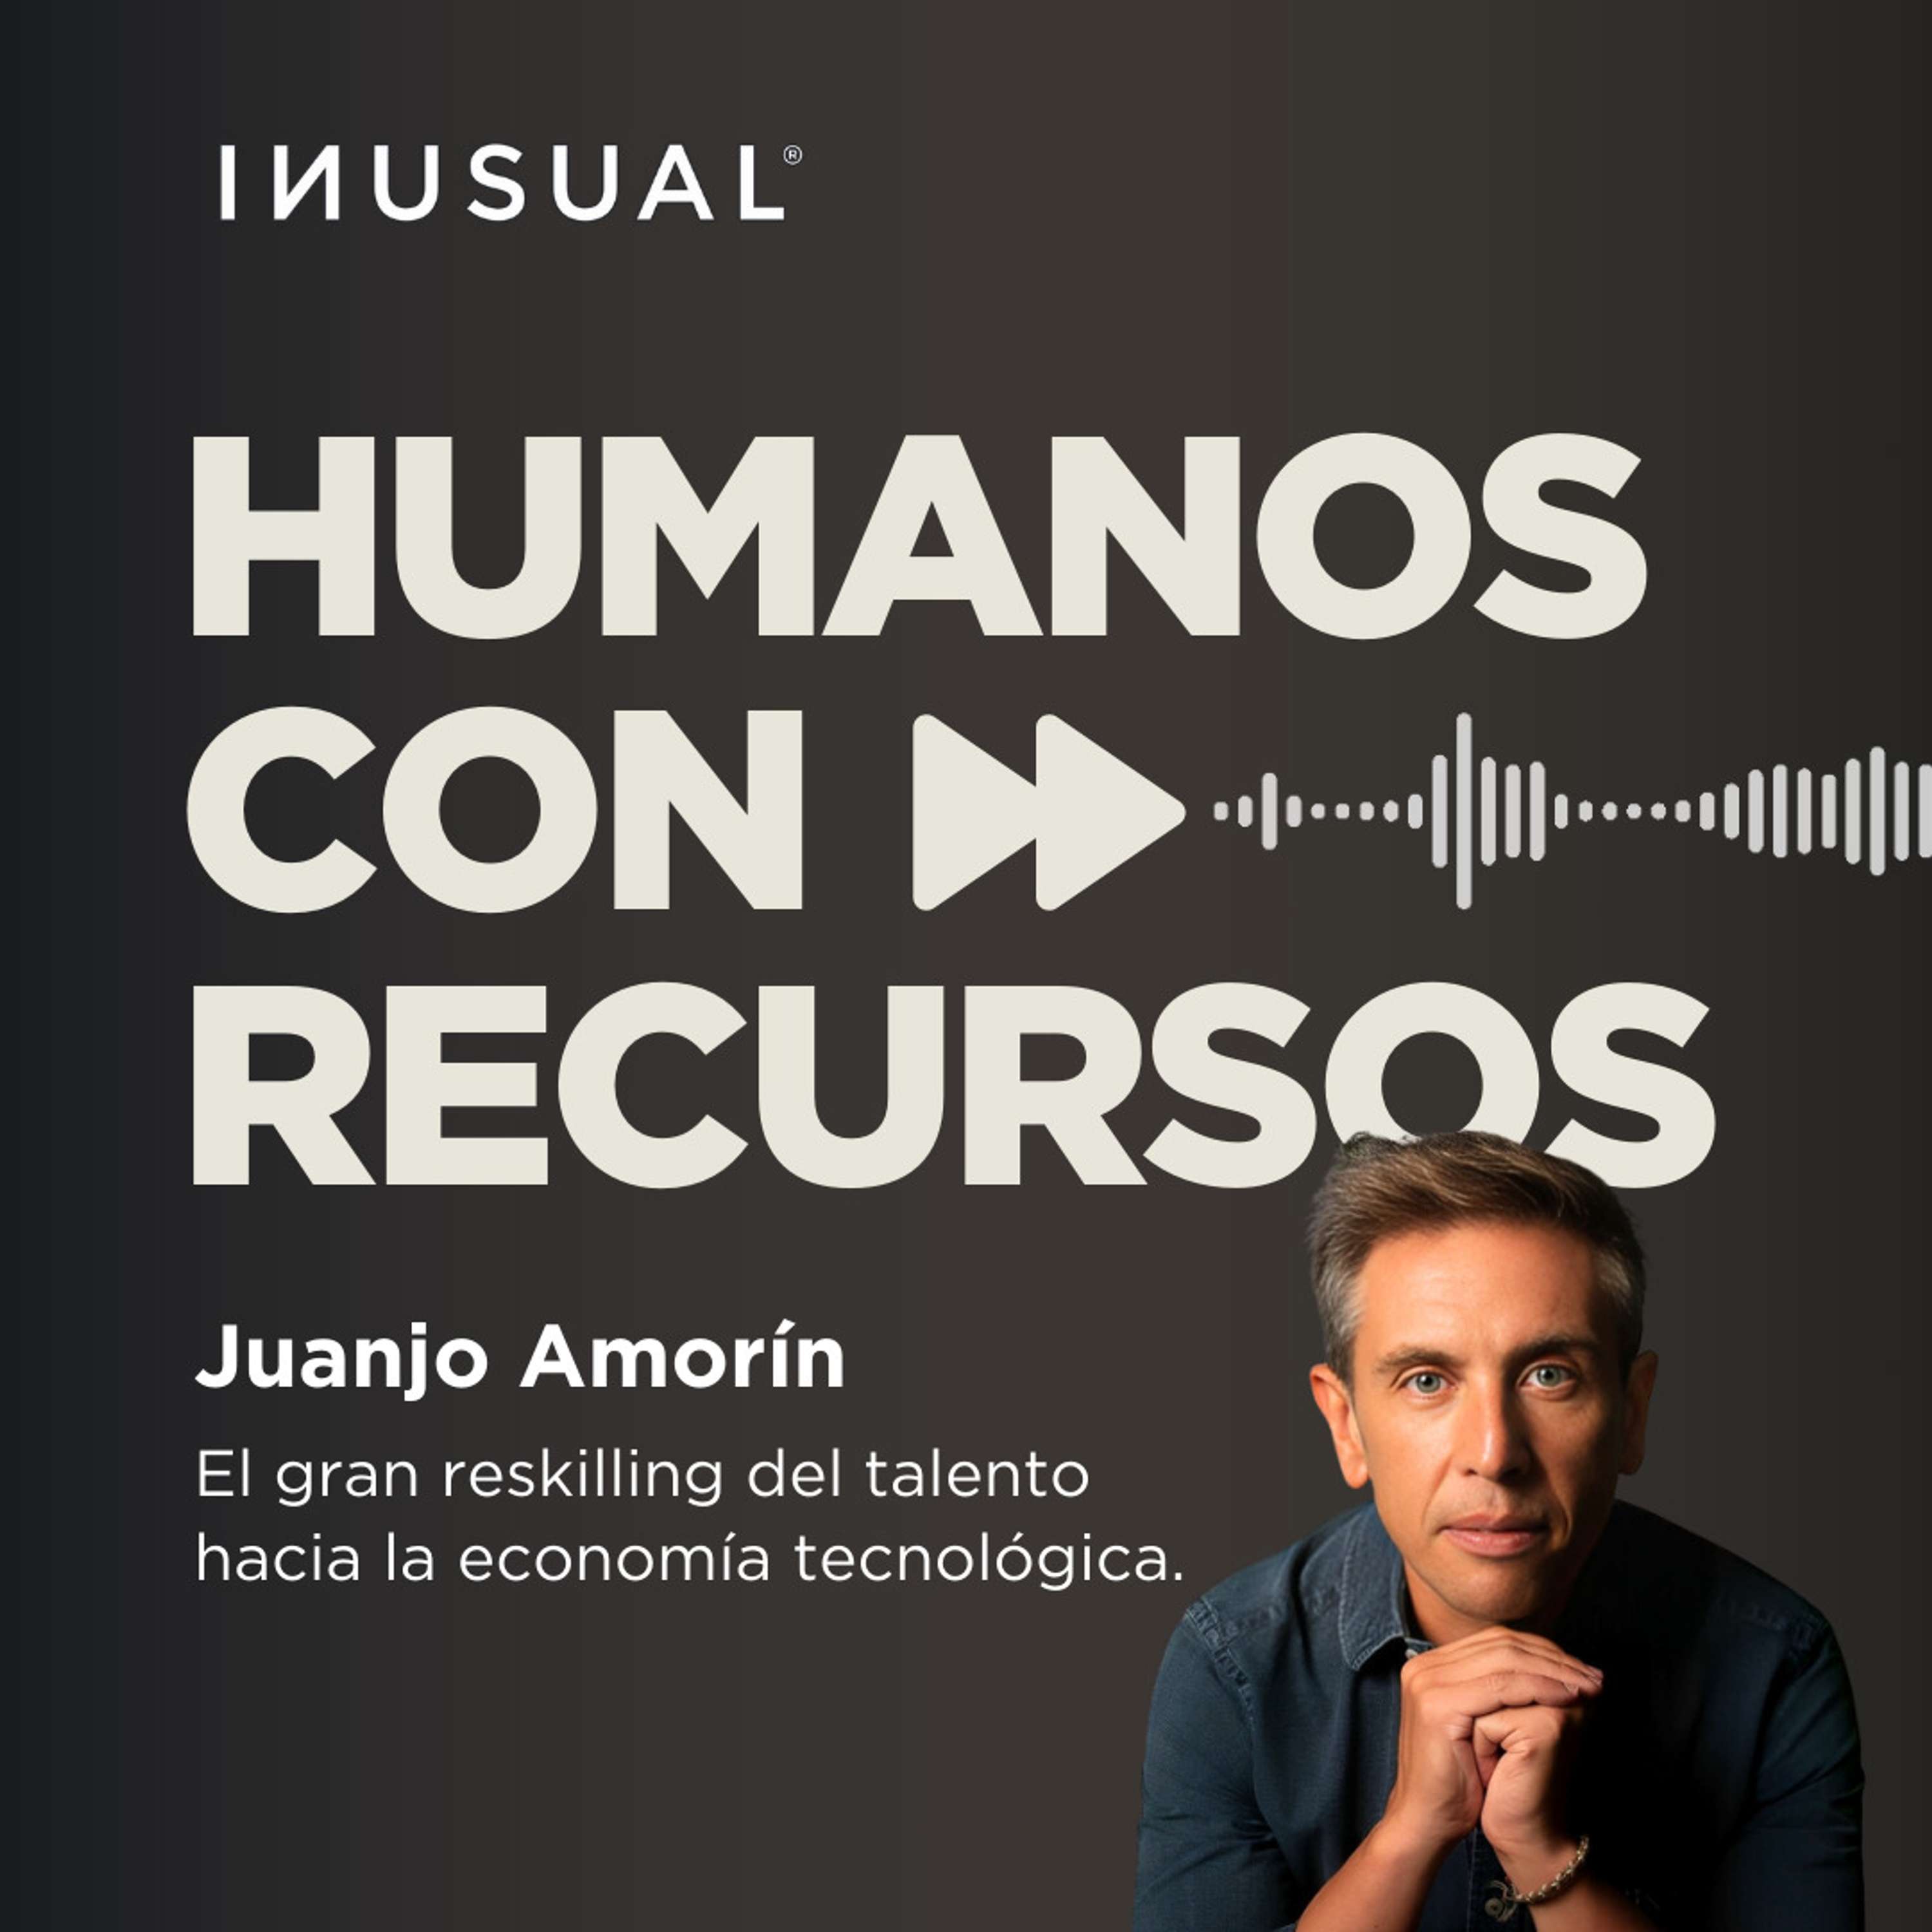 El gran reskilling del talento hacia la economía tecnológica, con Juanjo Amorín